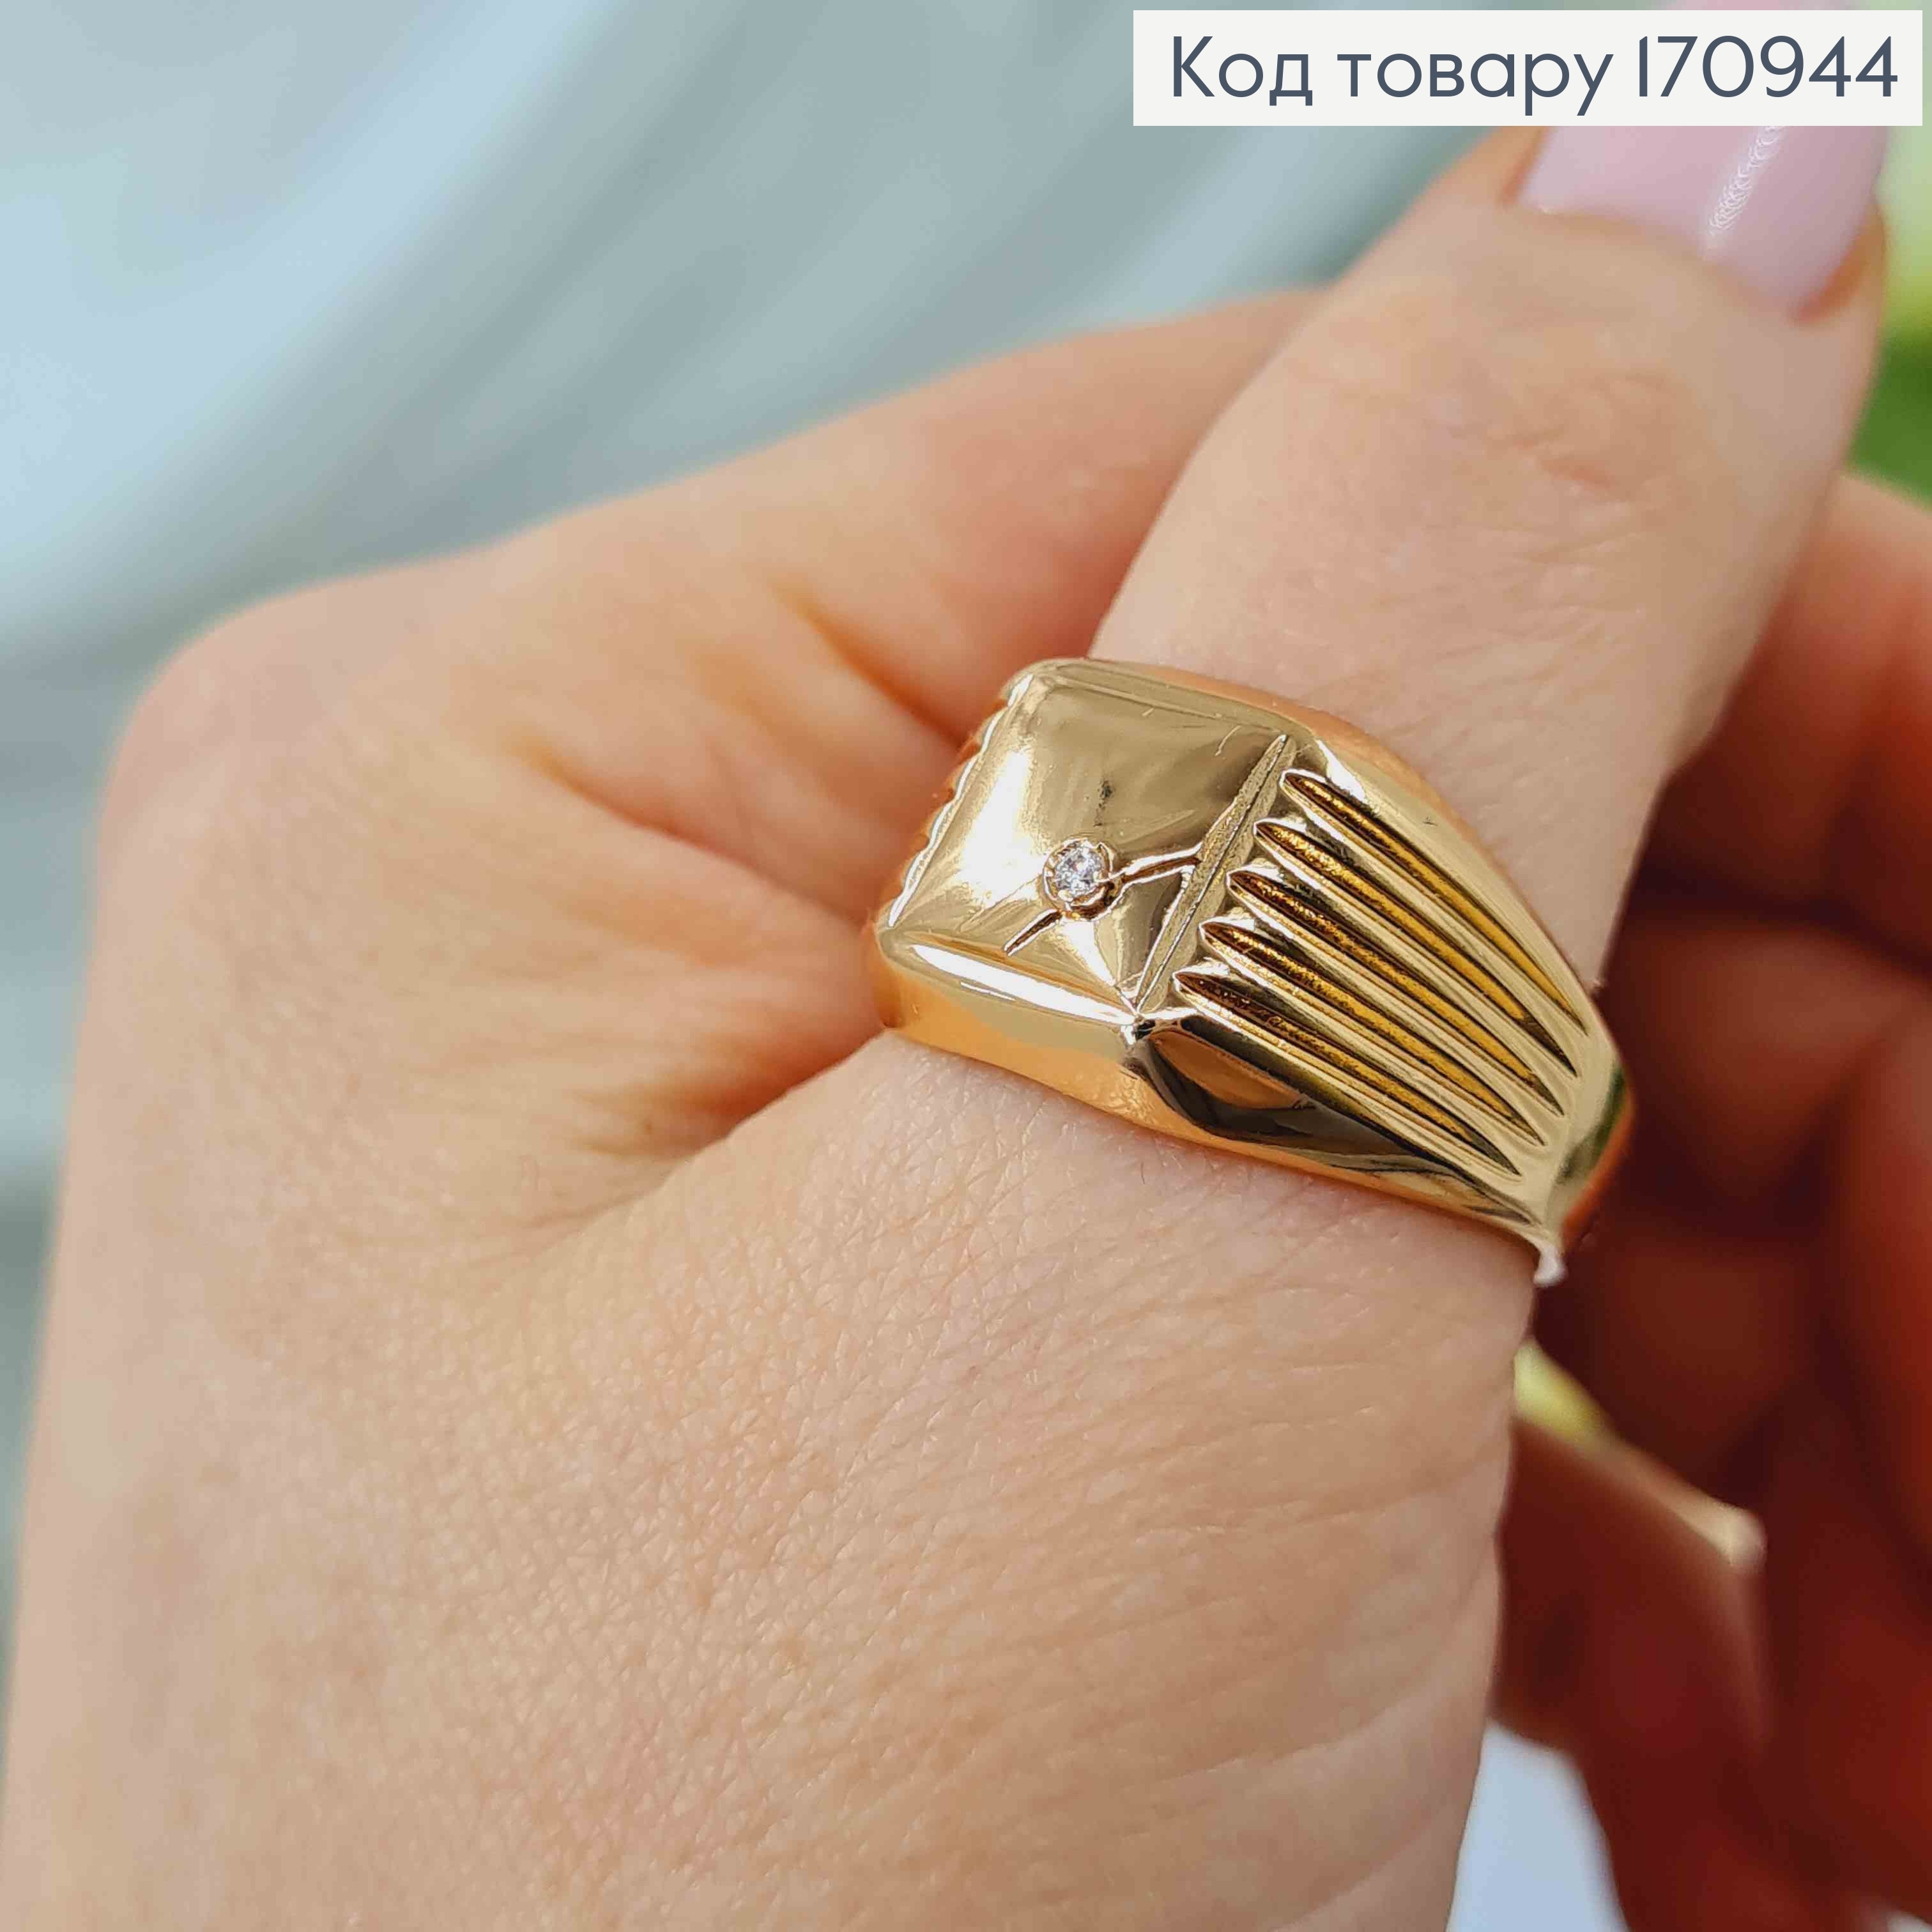 Кольцо печать, с камешком, Xuping 18К 170944 фото 2